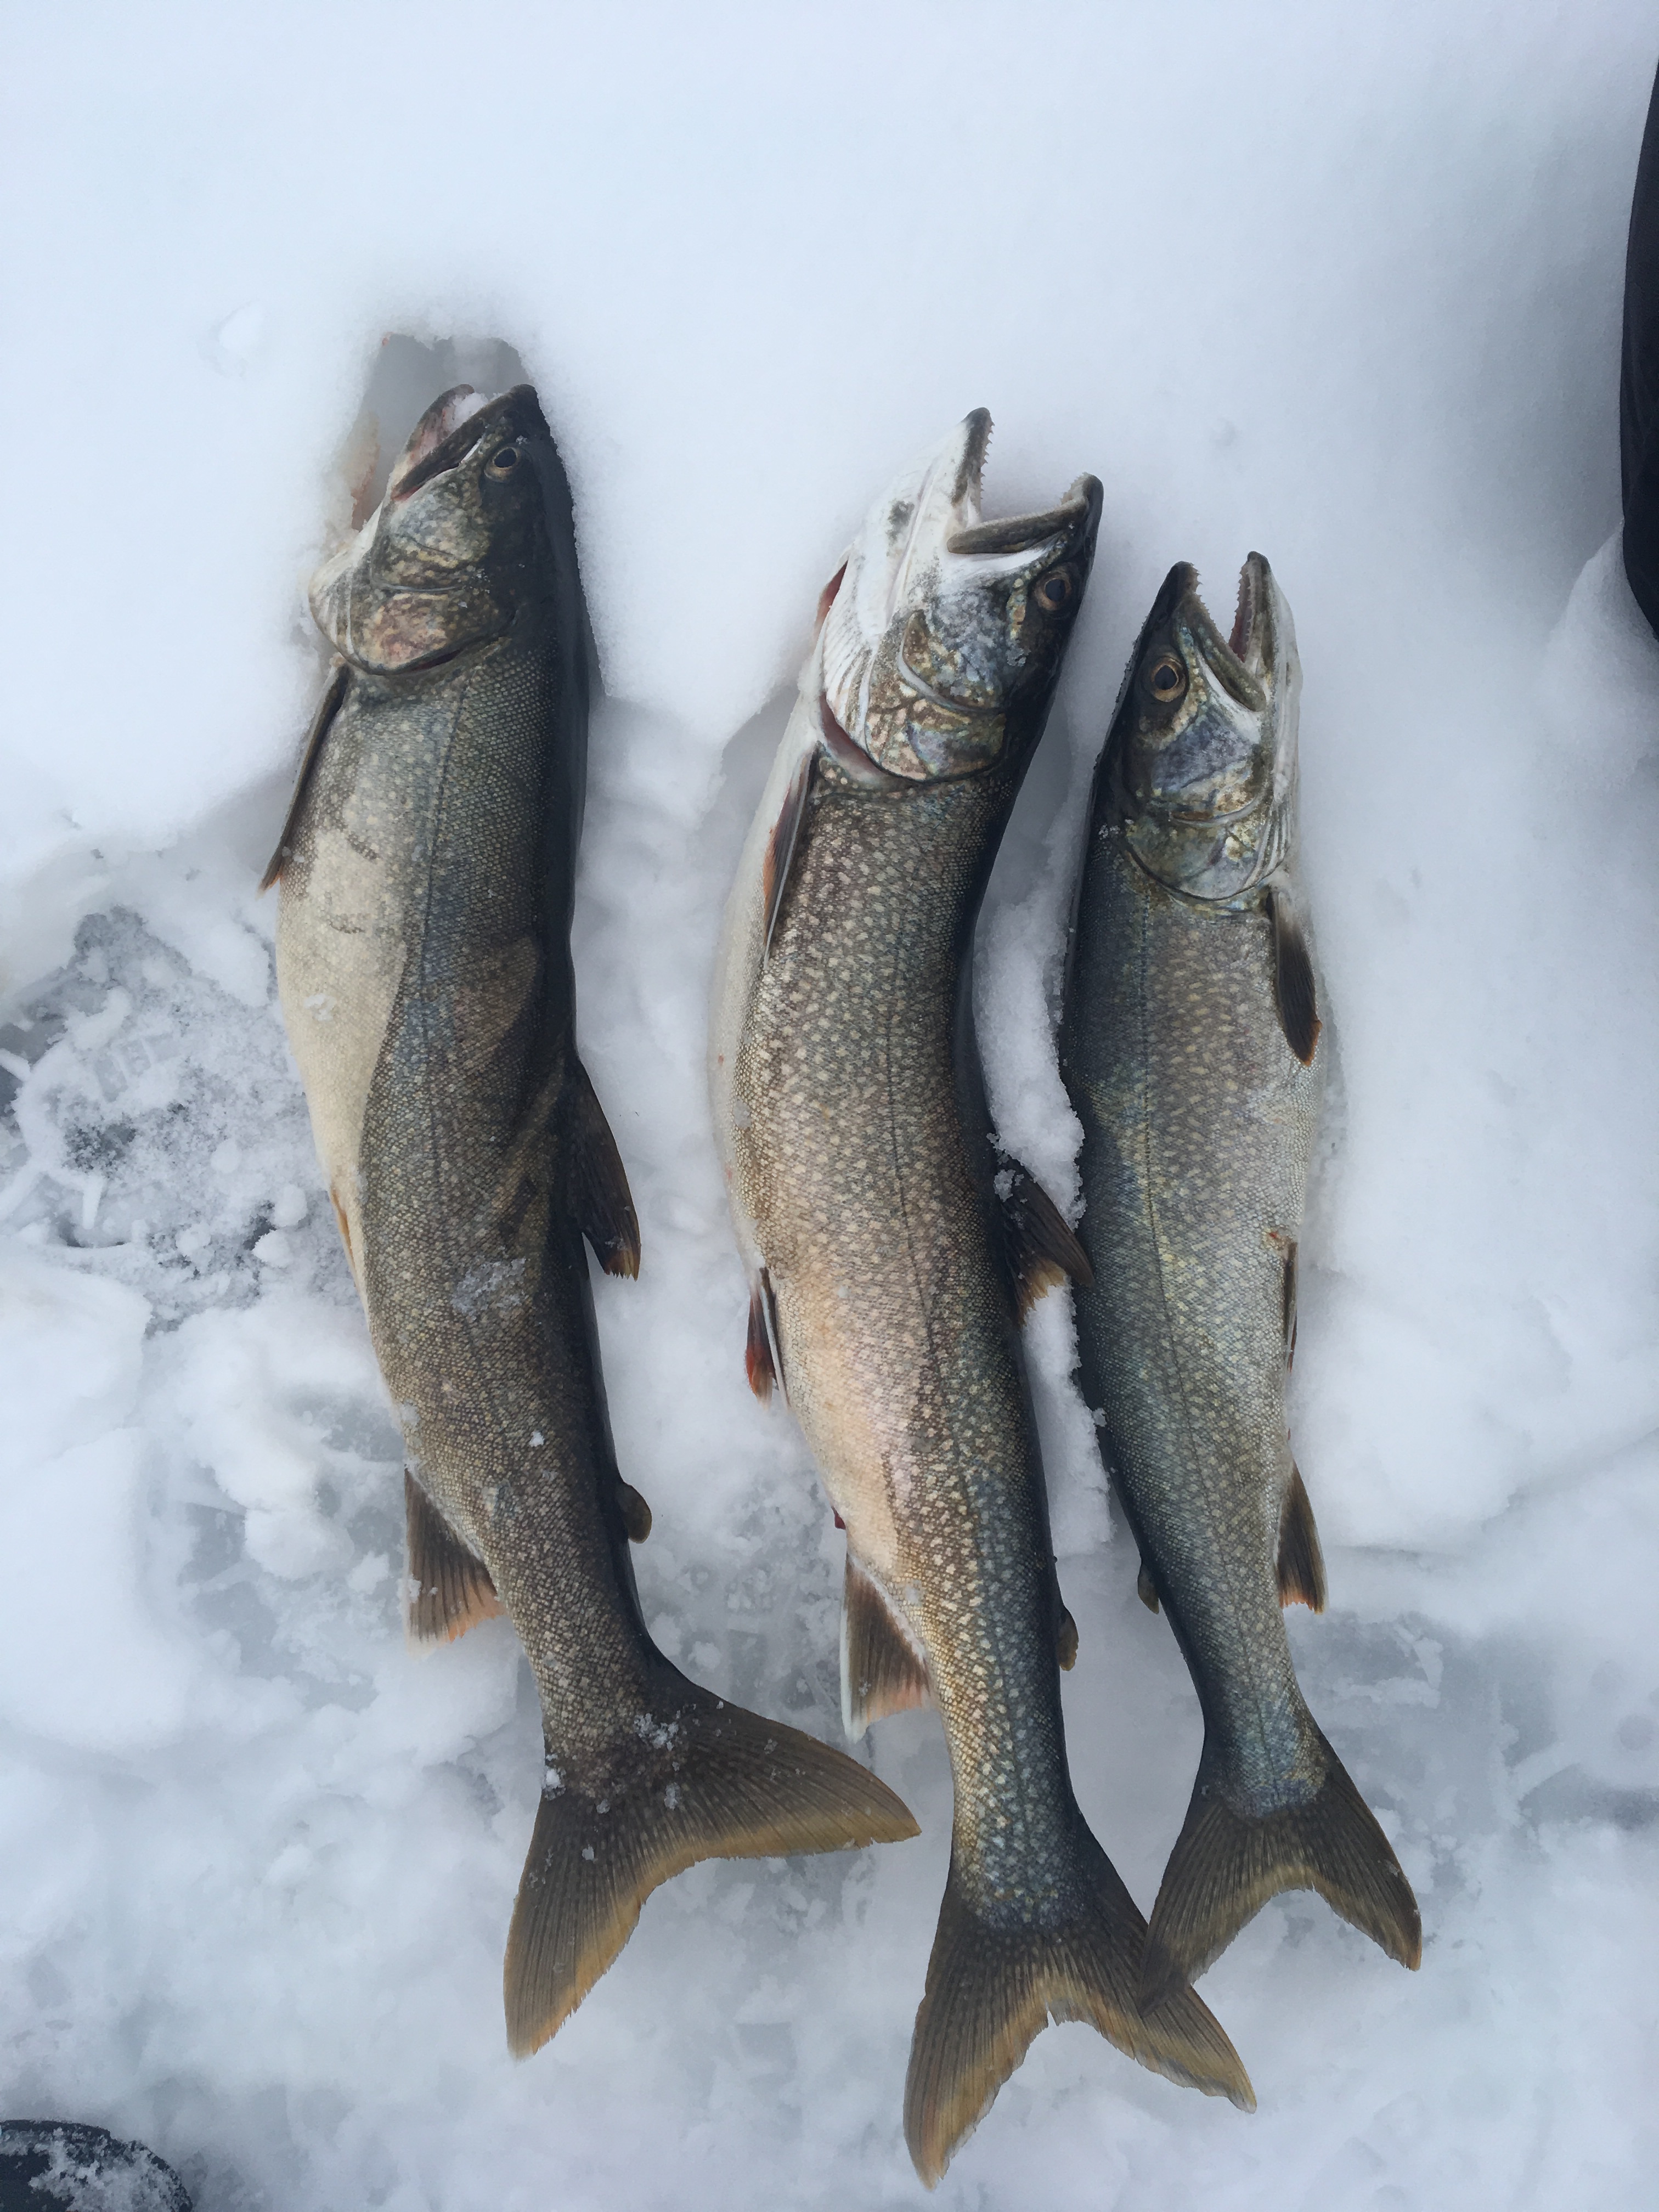 Keuka lake - Ice fishing - Lake Ontario United - Lake Ontario's